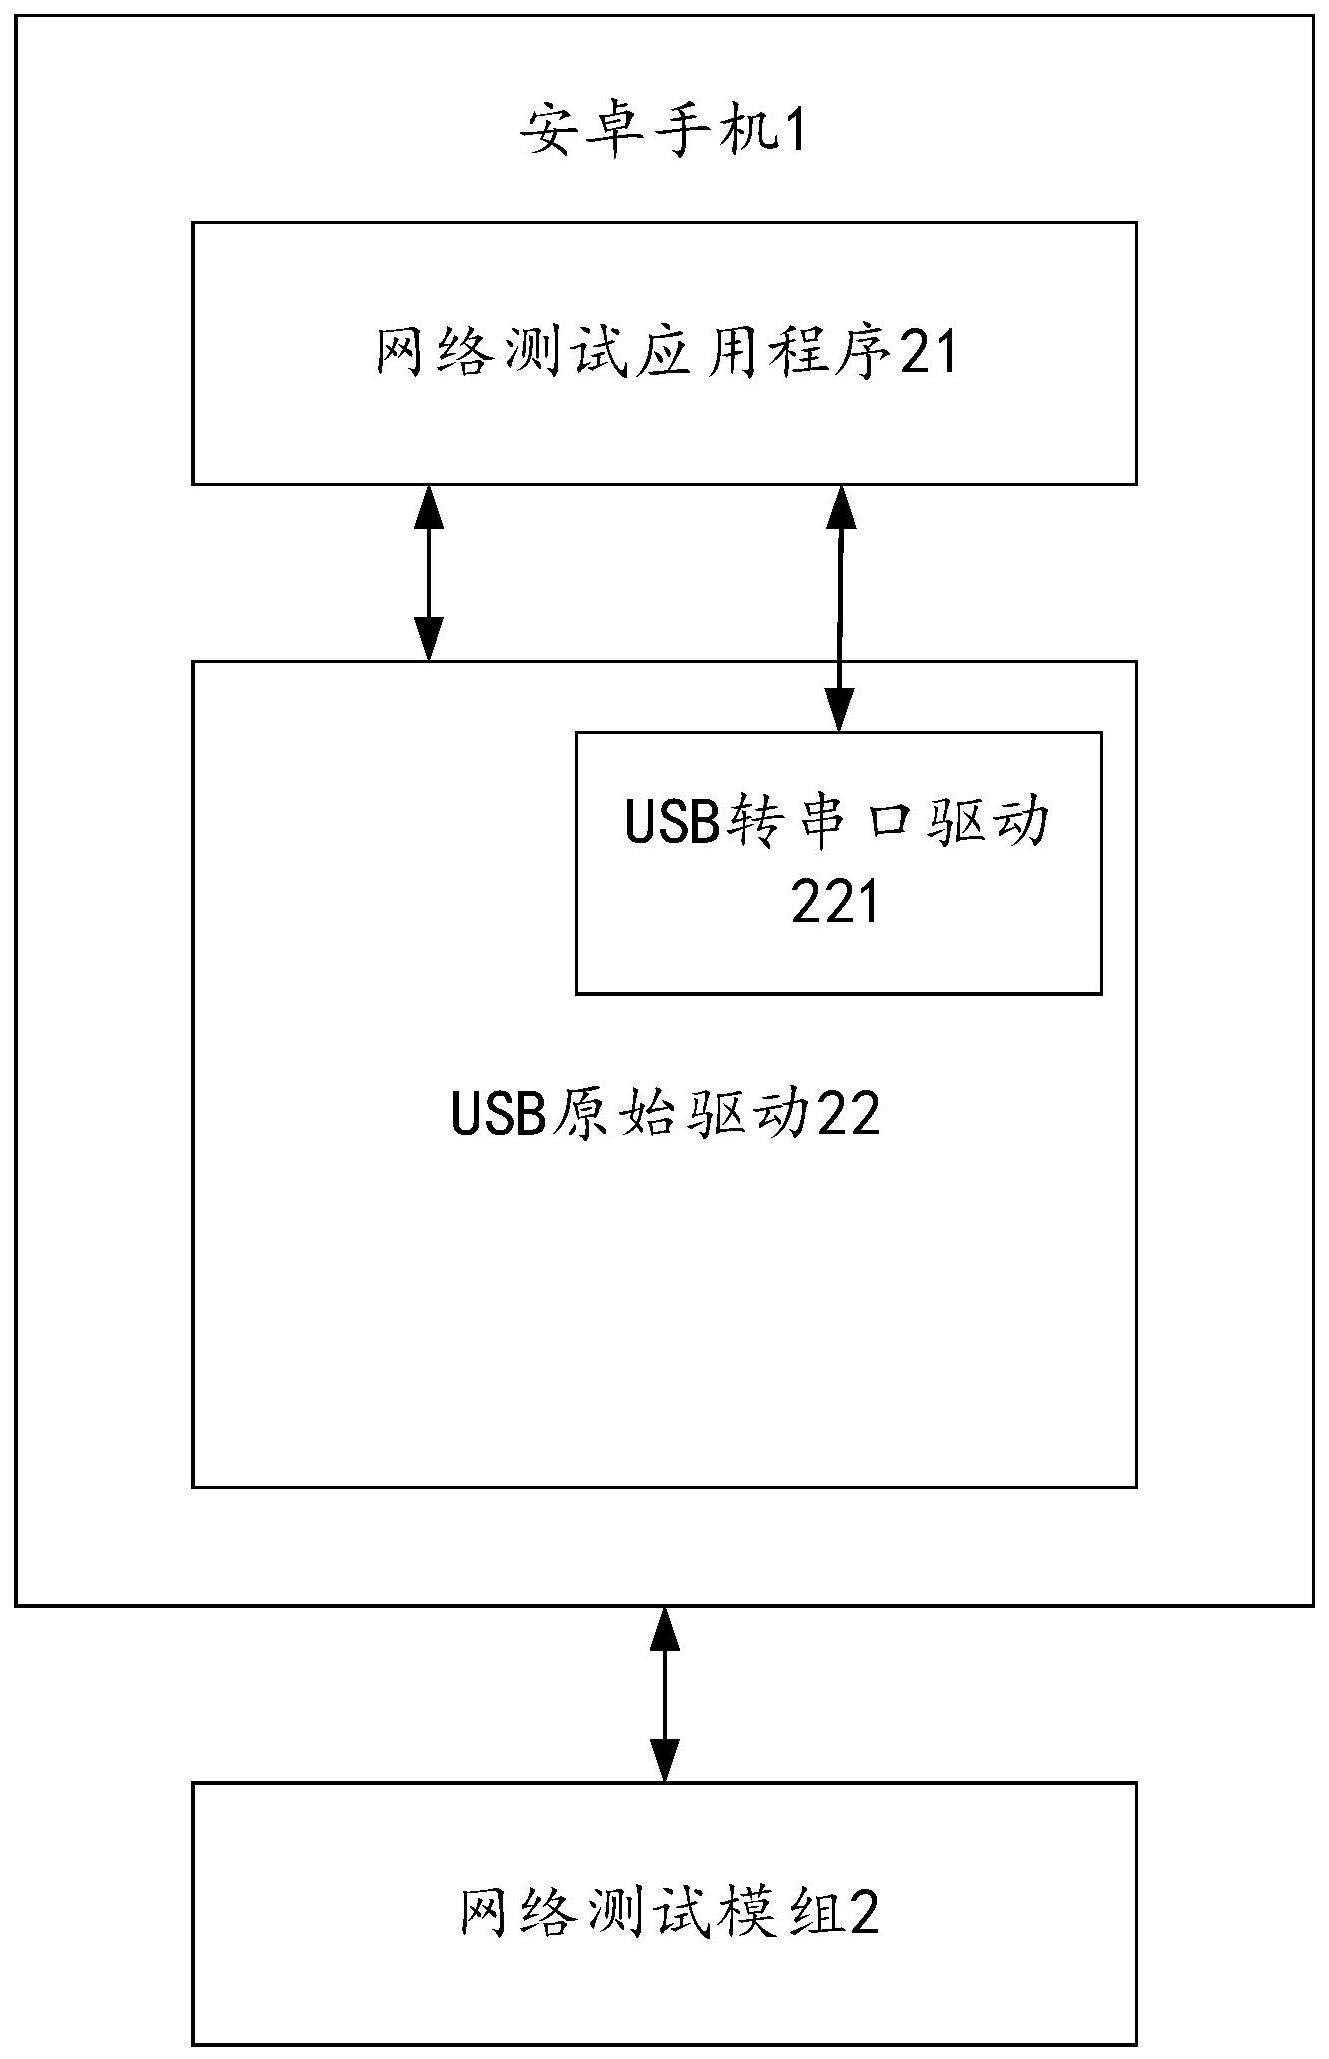 USB转串口驱动实现方法、网络测试方法、计算机装置及计算机可读存储介质与流程